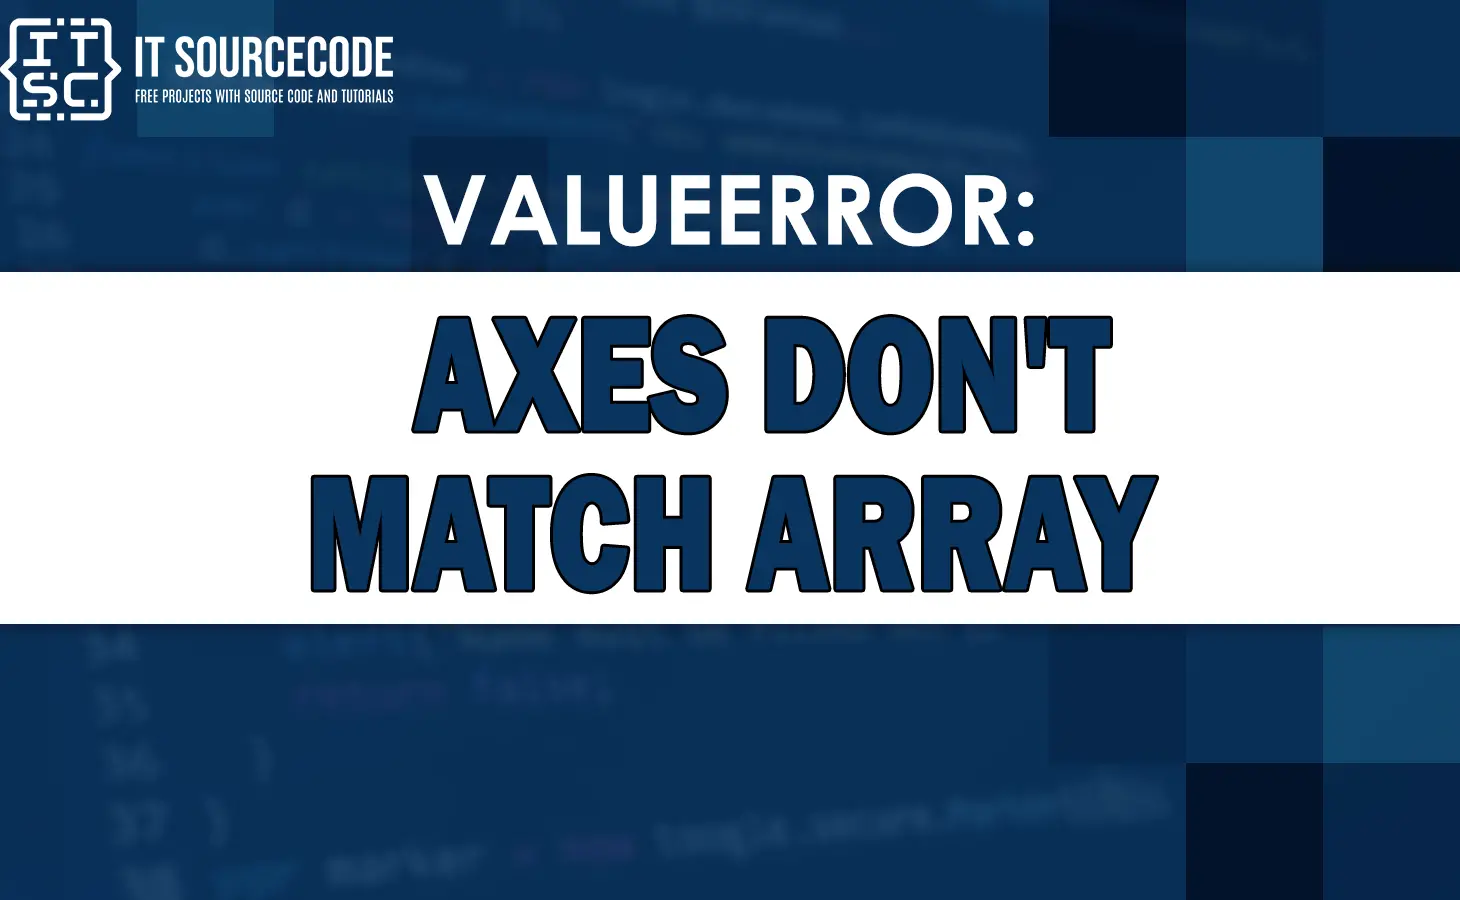 valueerror axes don't match array